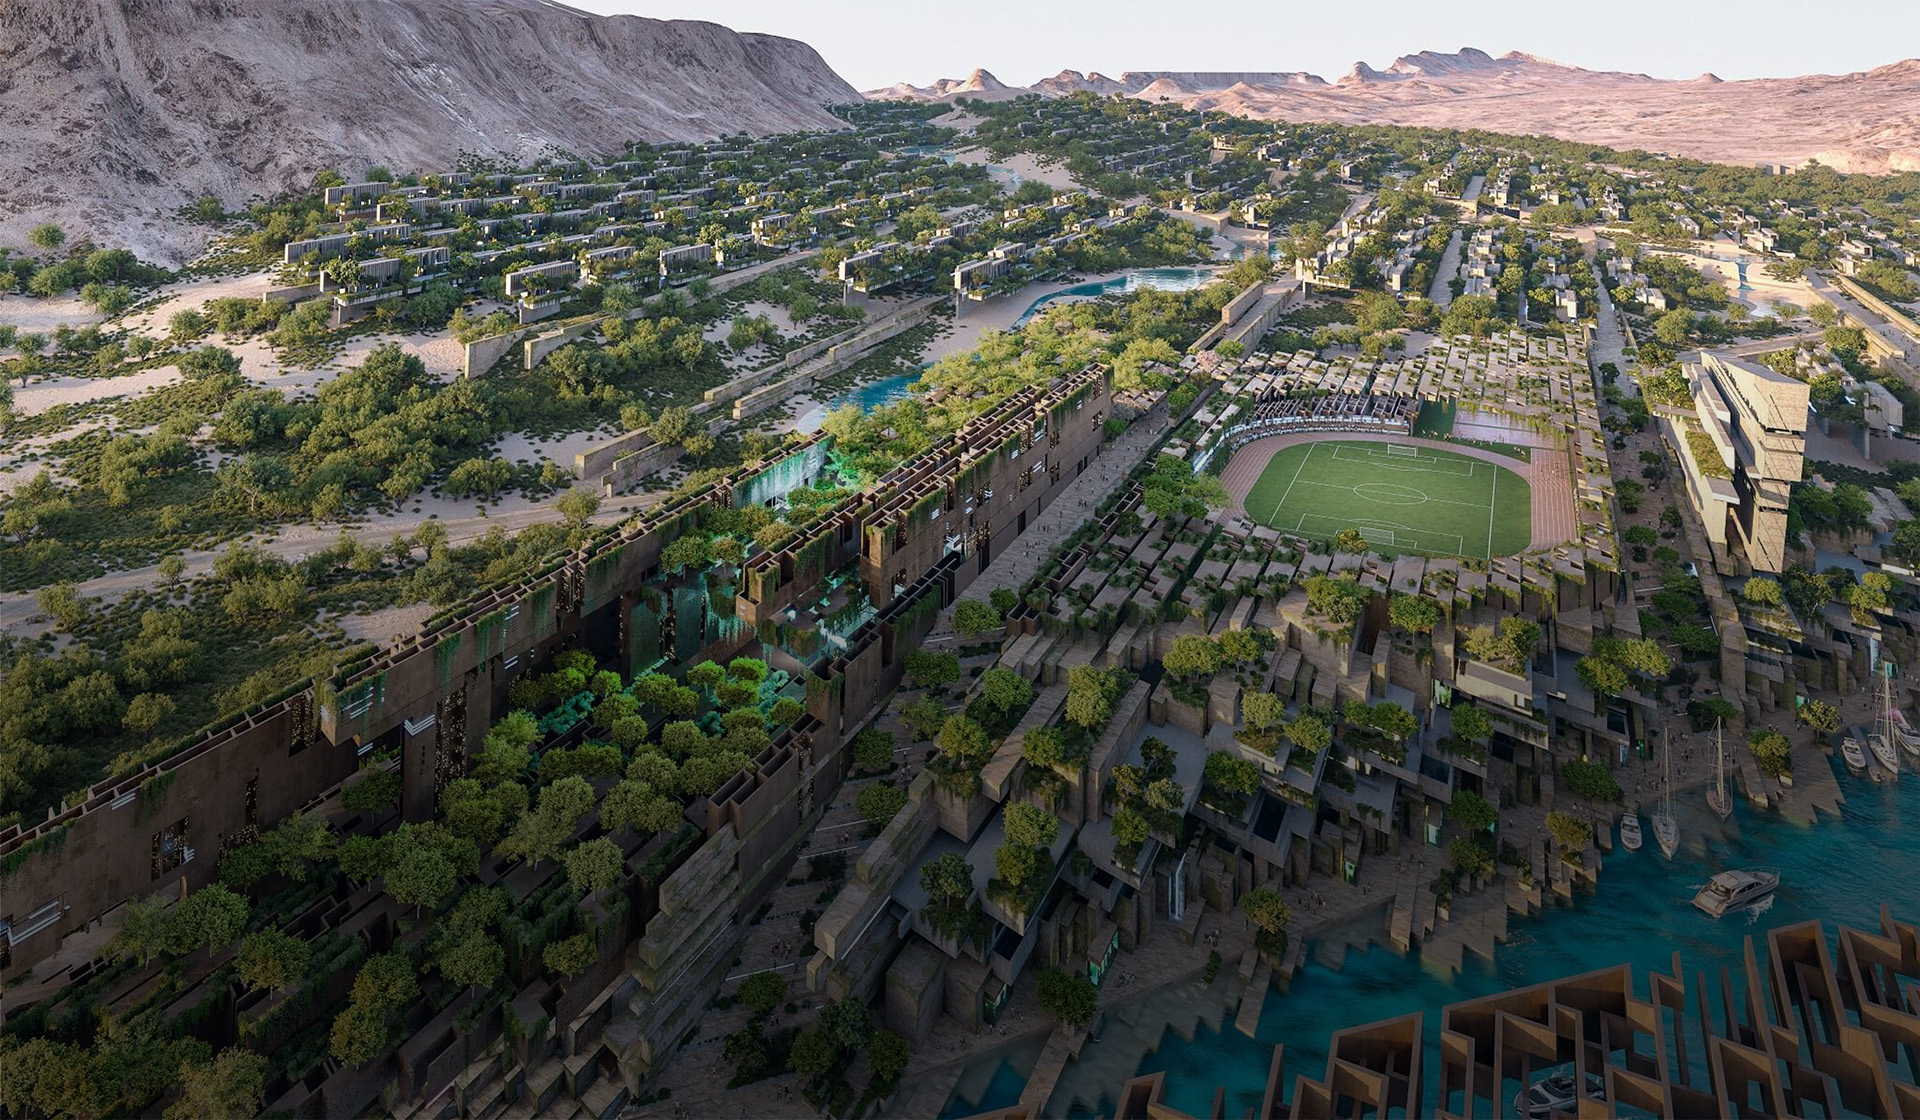 Vue aérienne de la communauté de Jaumur nichée dans les montagnes, avec un grand stade de soccer au centre  